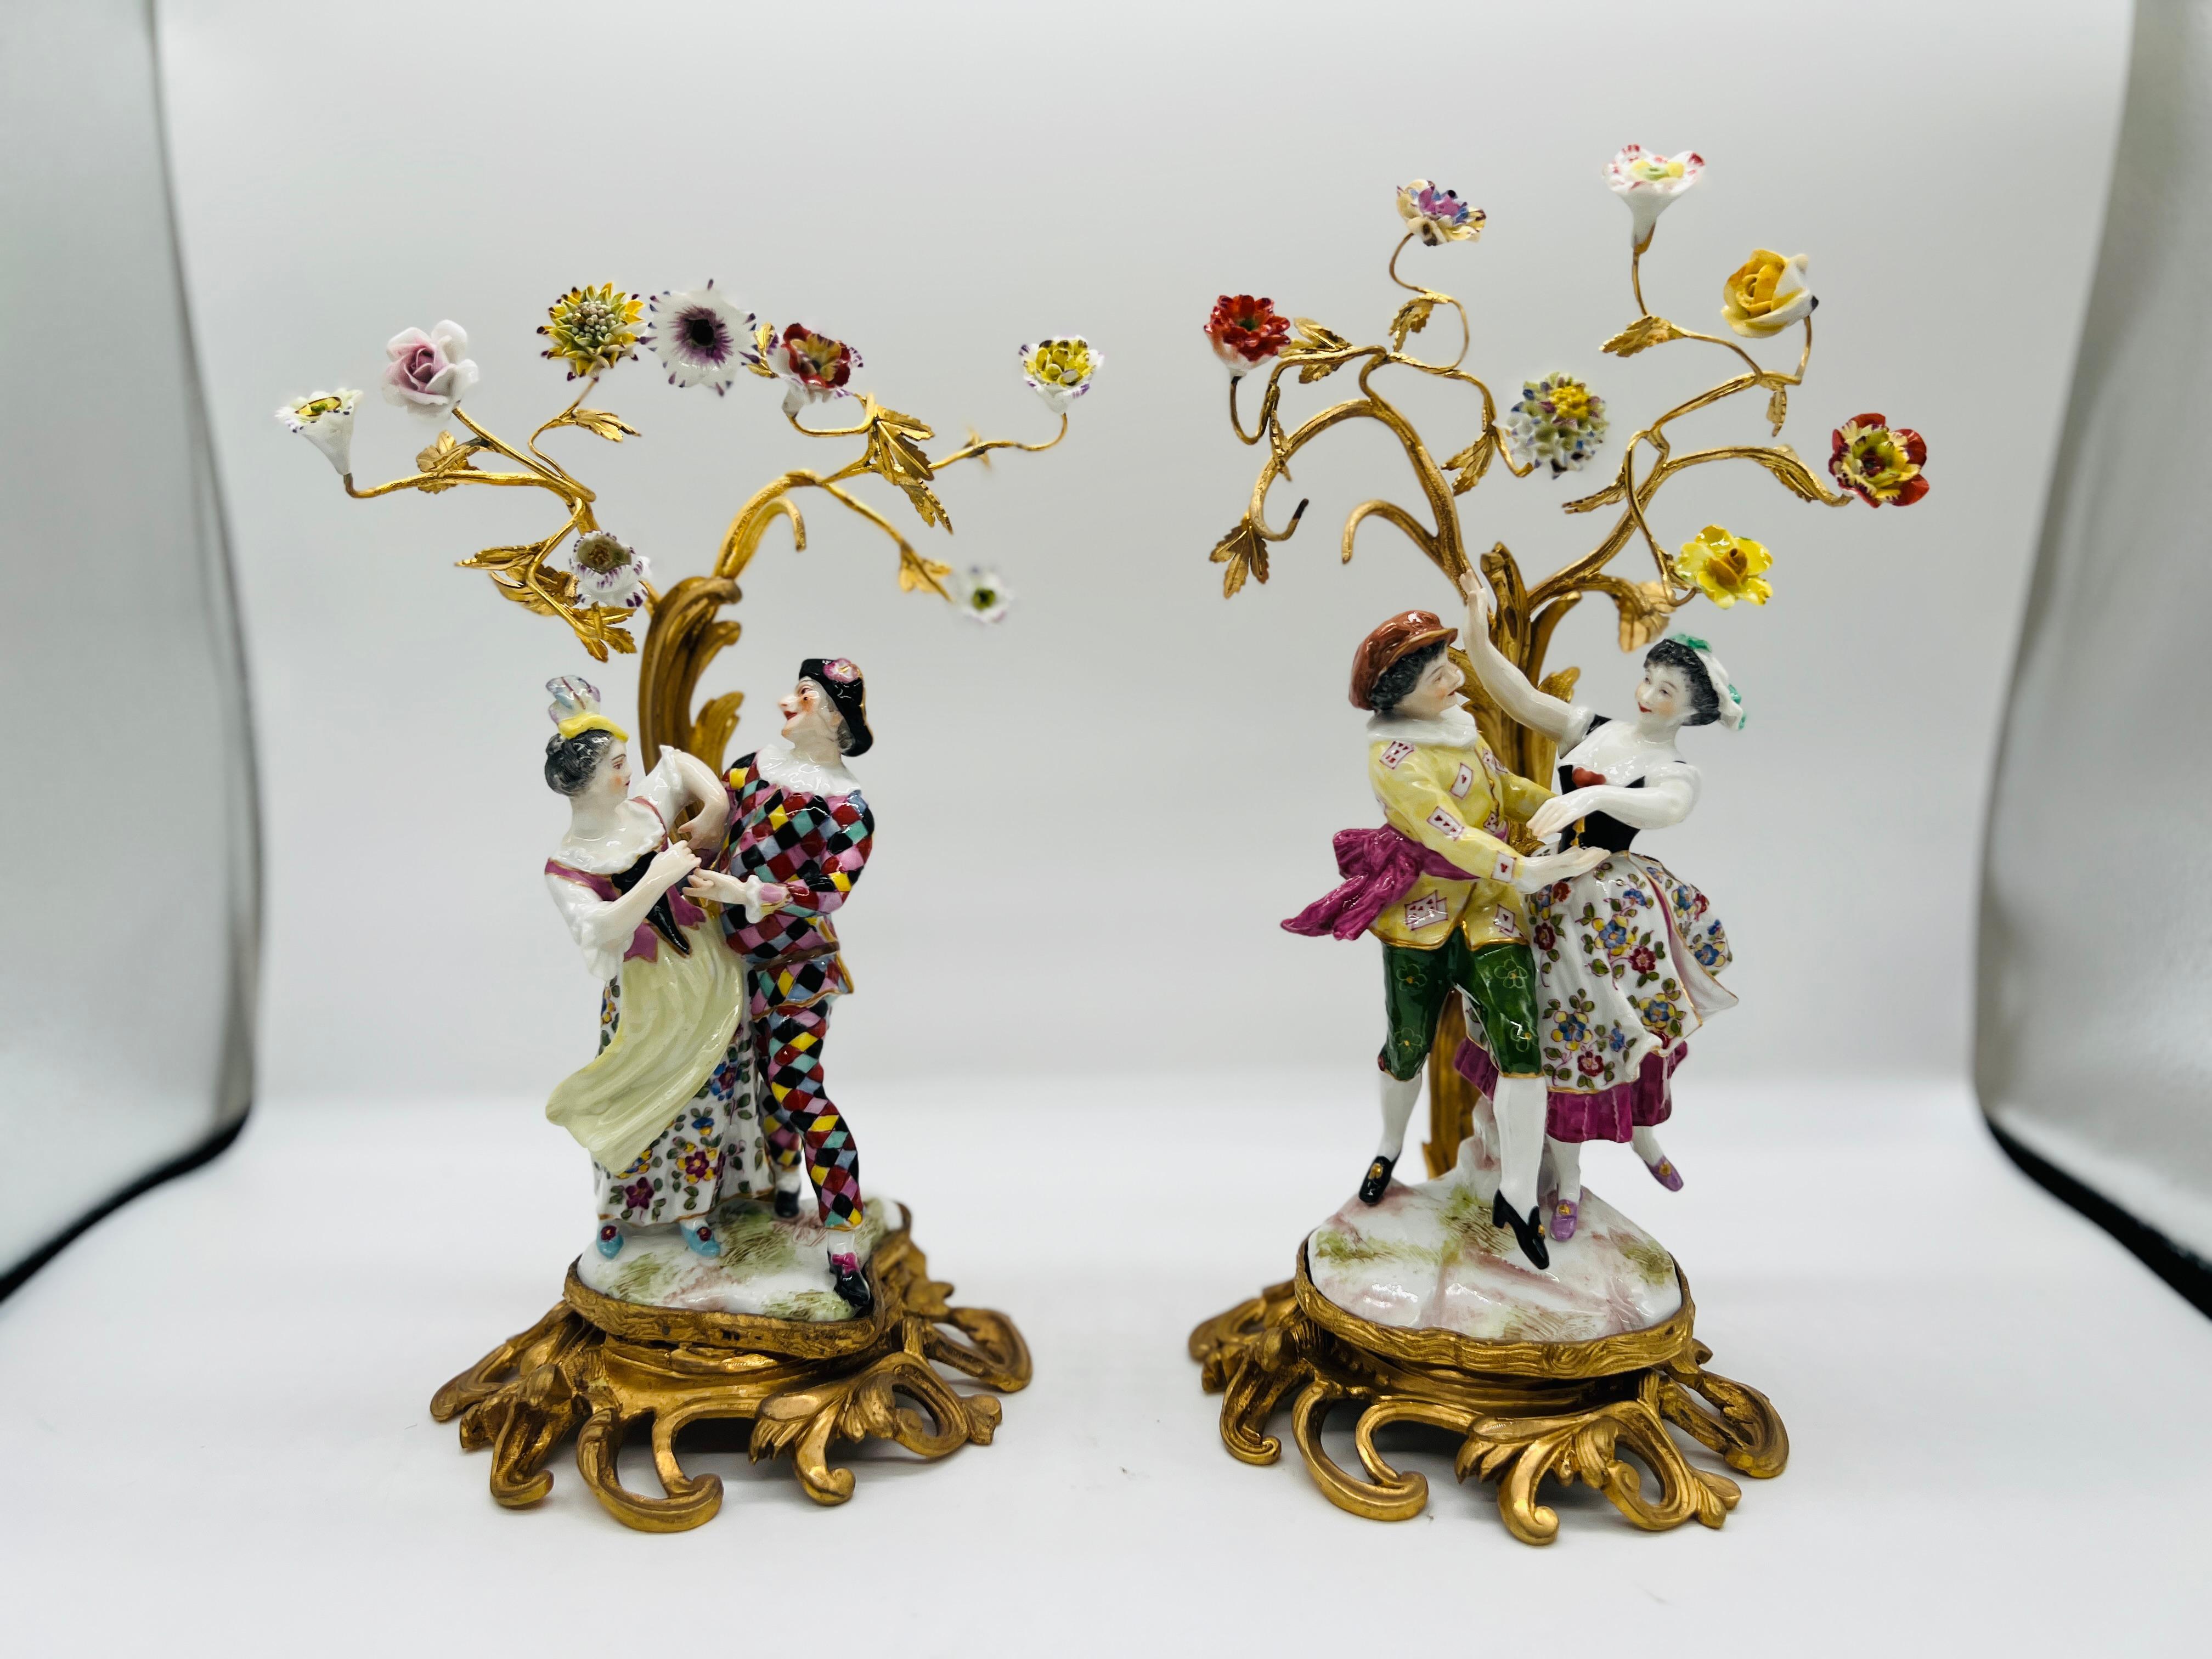 Samson, Edme Et Cie (fundada en 1845), hacia 1880. 

Una agrupación muy fina de dos expositores de porcelana:

1) Representación de una pareja de Arlequines bailando según la serie original de Meissen 